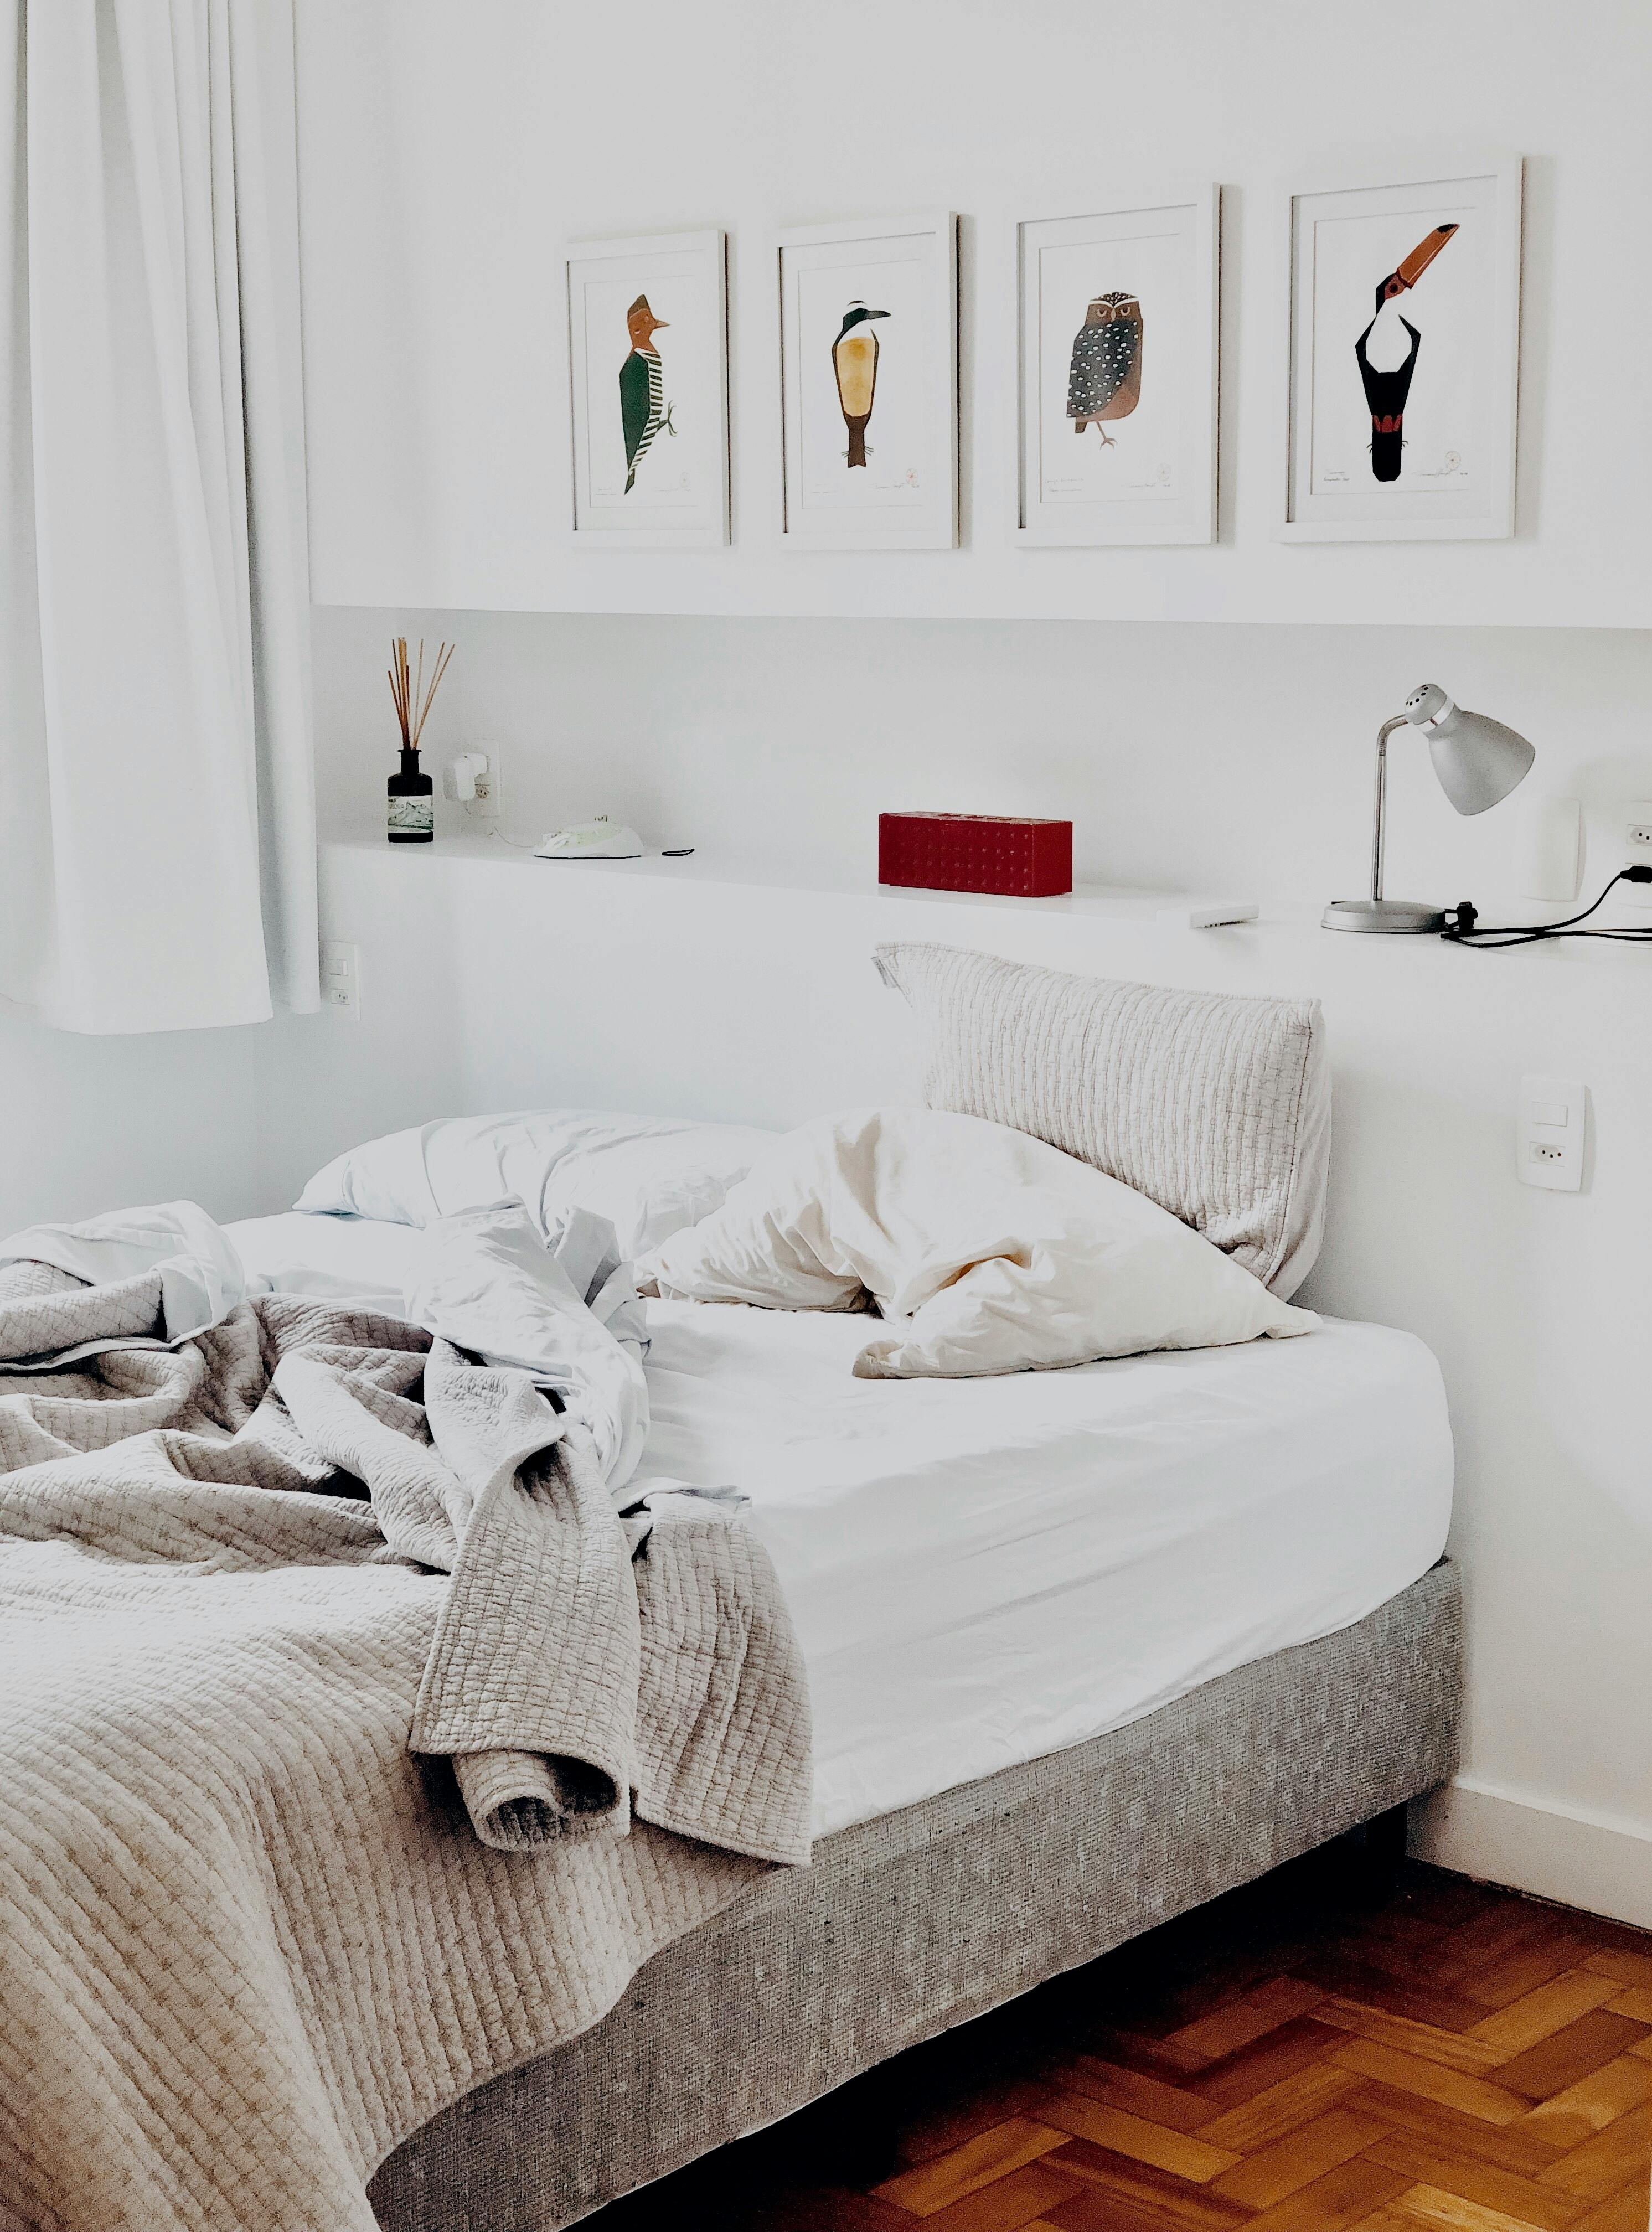 Dormitorio desordenado | Fuente: Pexels